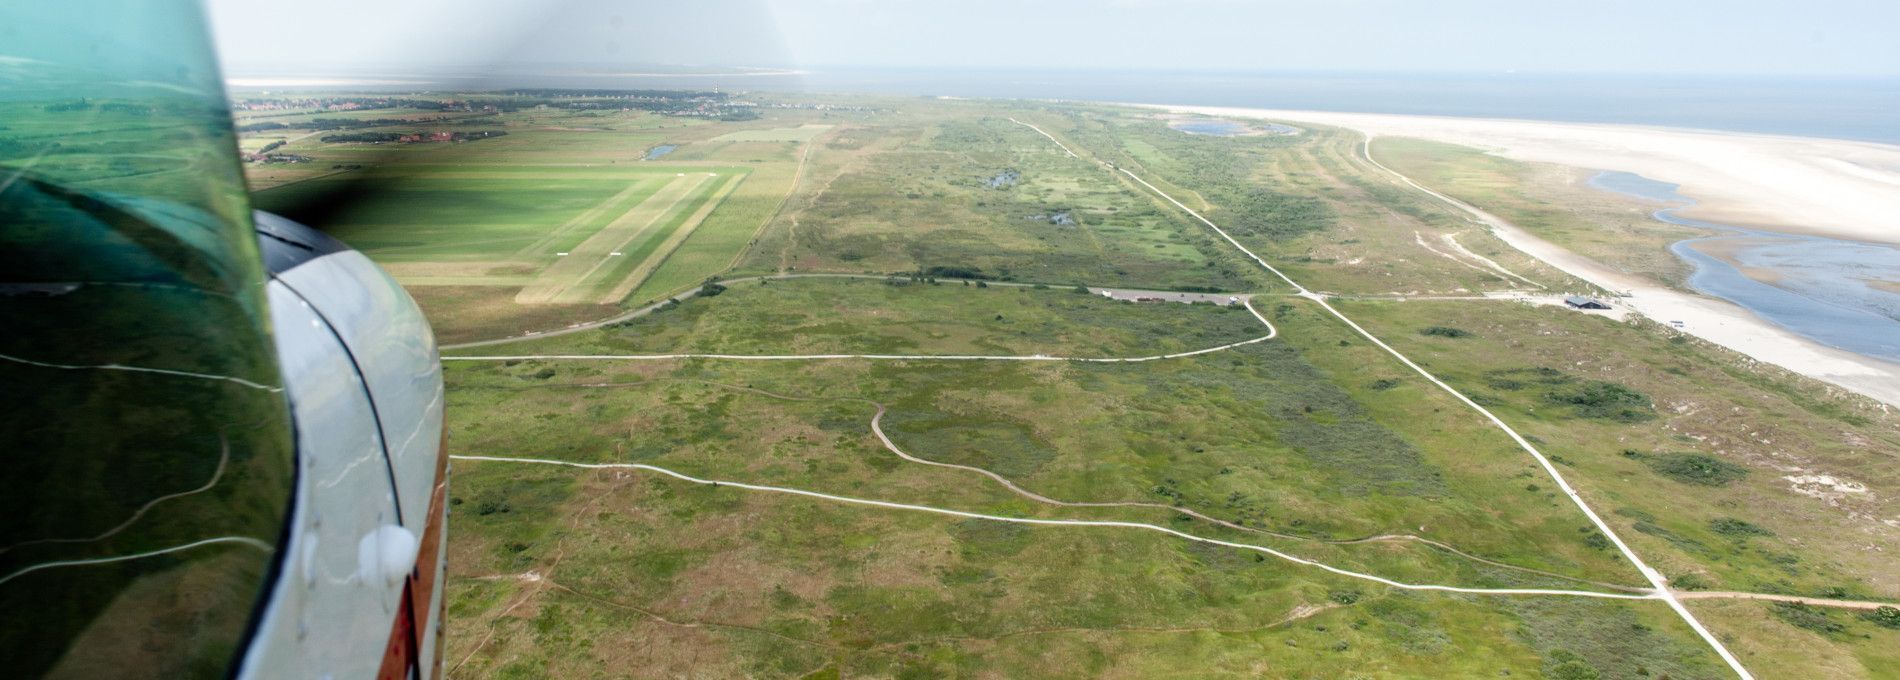 Ameland Flughafen - VVV Ameland